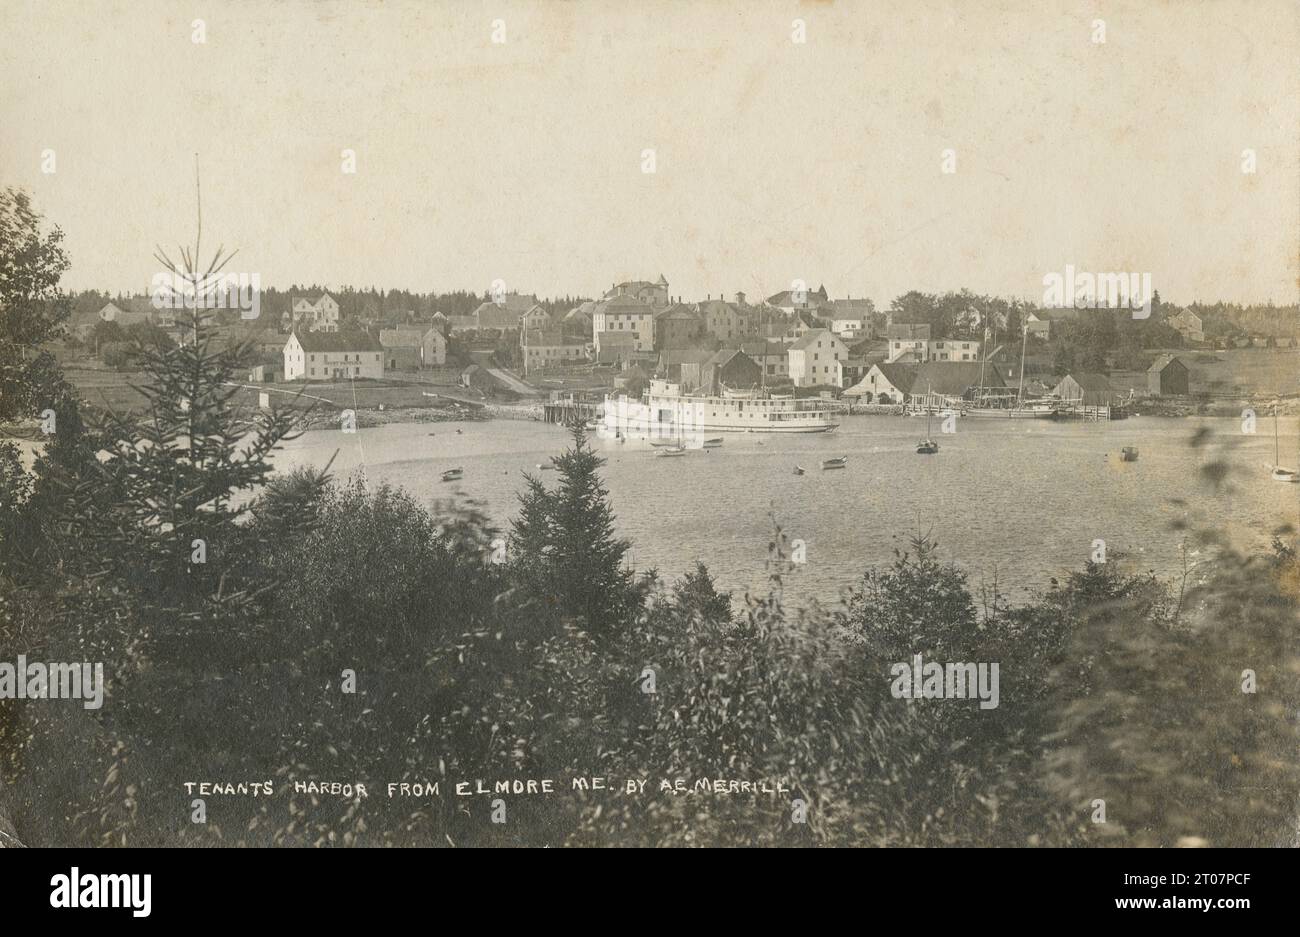 Antikes Foto aus den 1920er Jahren, Pächter Harbor, St. George, Maine aus Elmore, Maine von A. E. Merrill. QUELLE: ORIGINALFOTO Stockfoto